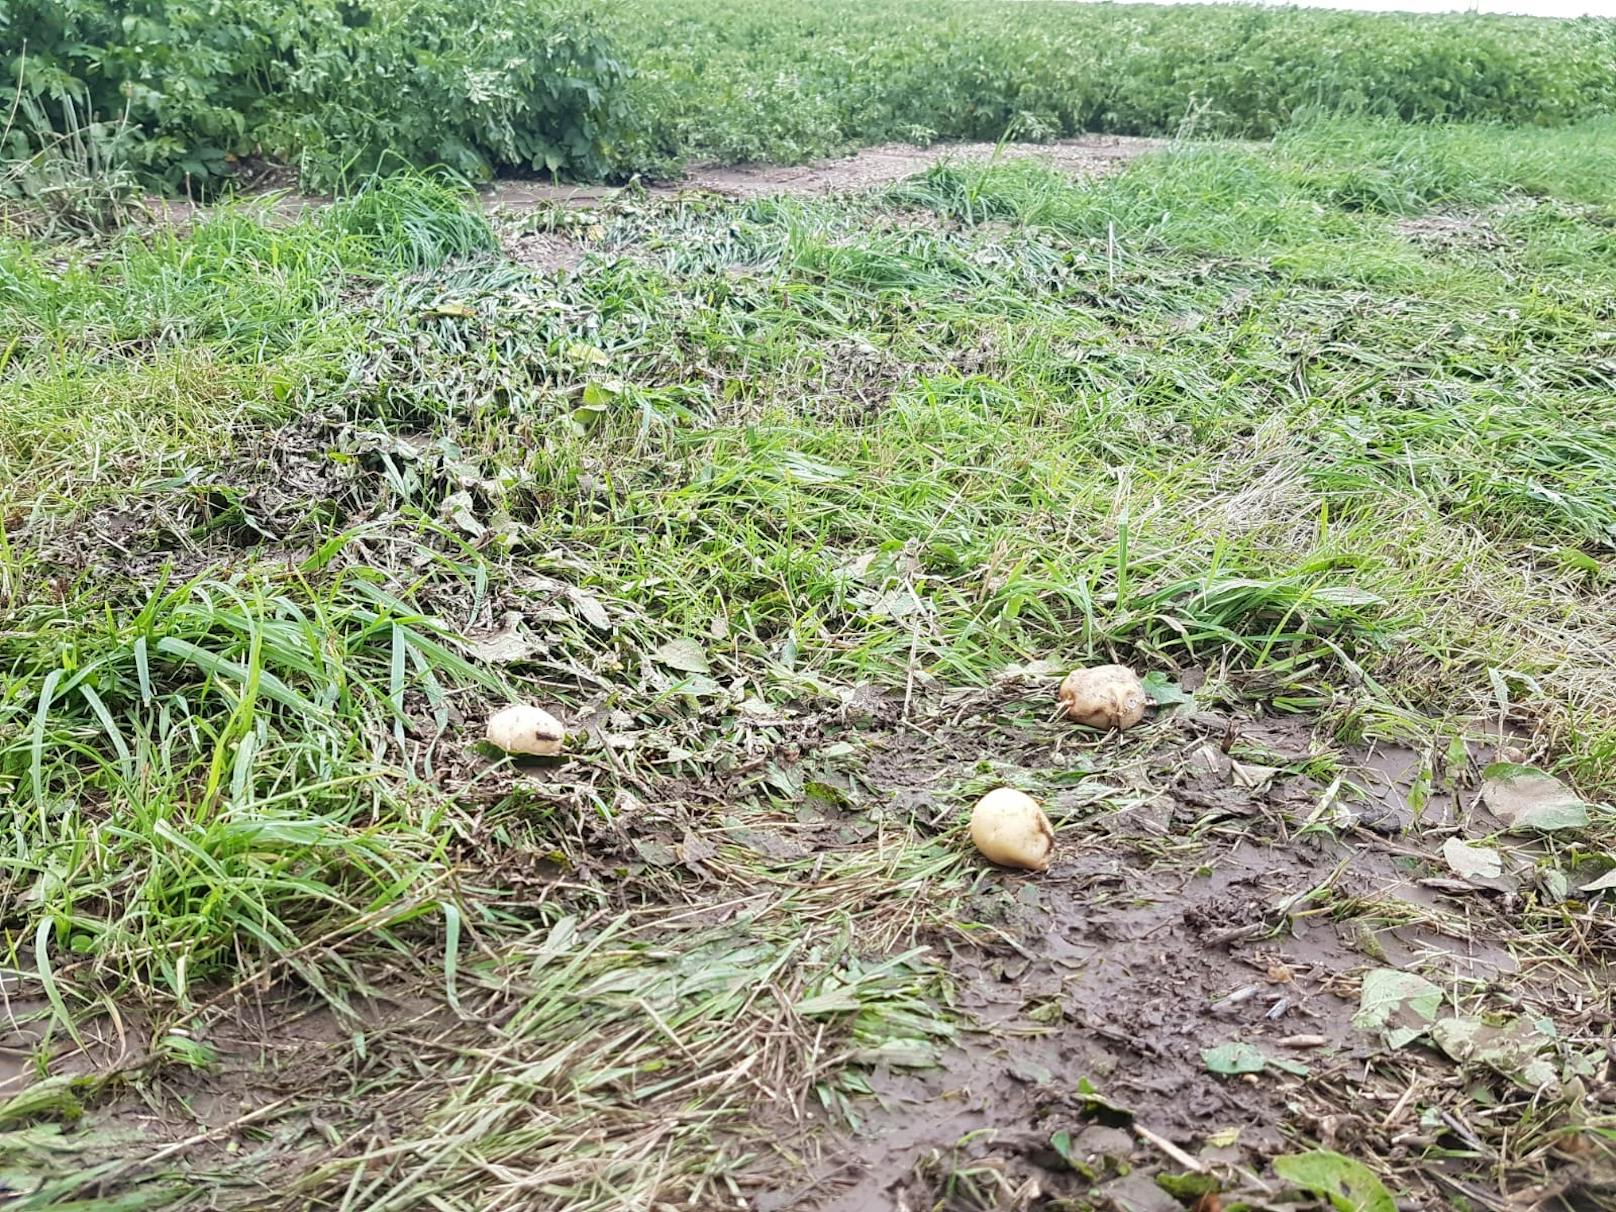 Bilder zeigten vom Hagel betroffene Kartoffelfelder, Weintraubenreben, Kürbisäcker und Apfelbäume.